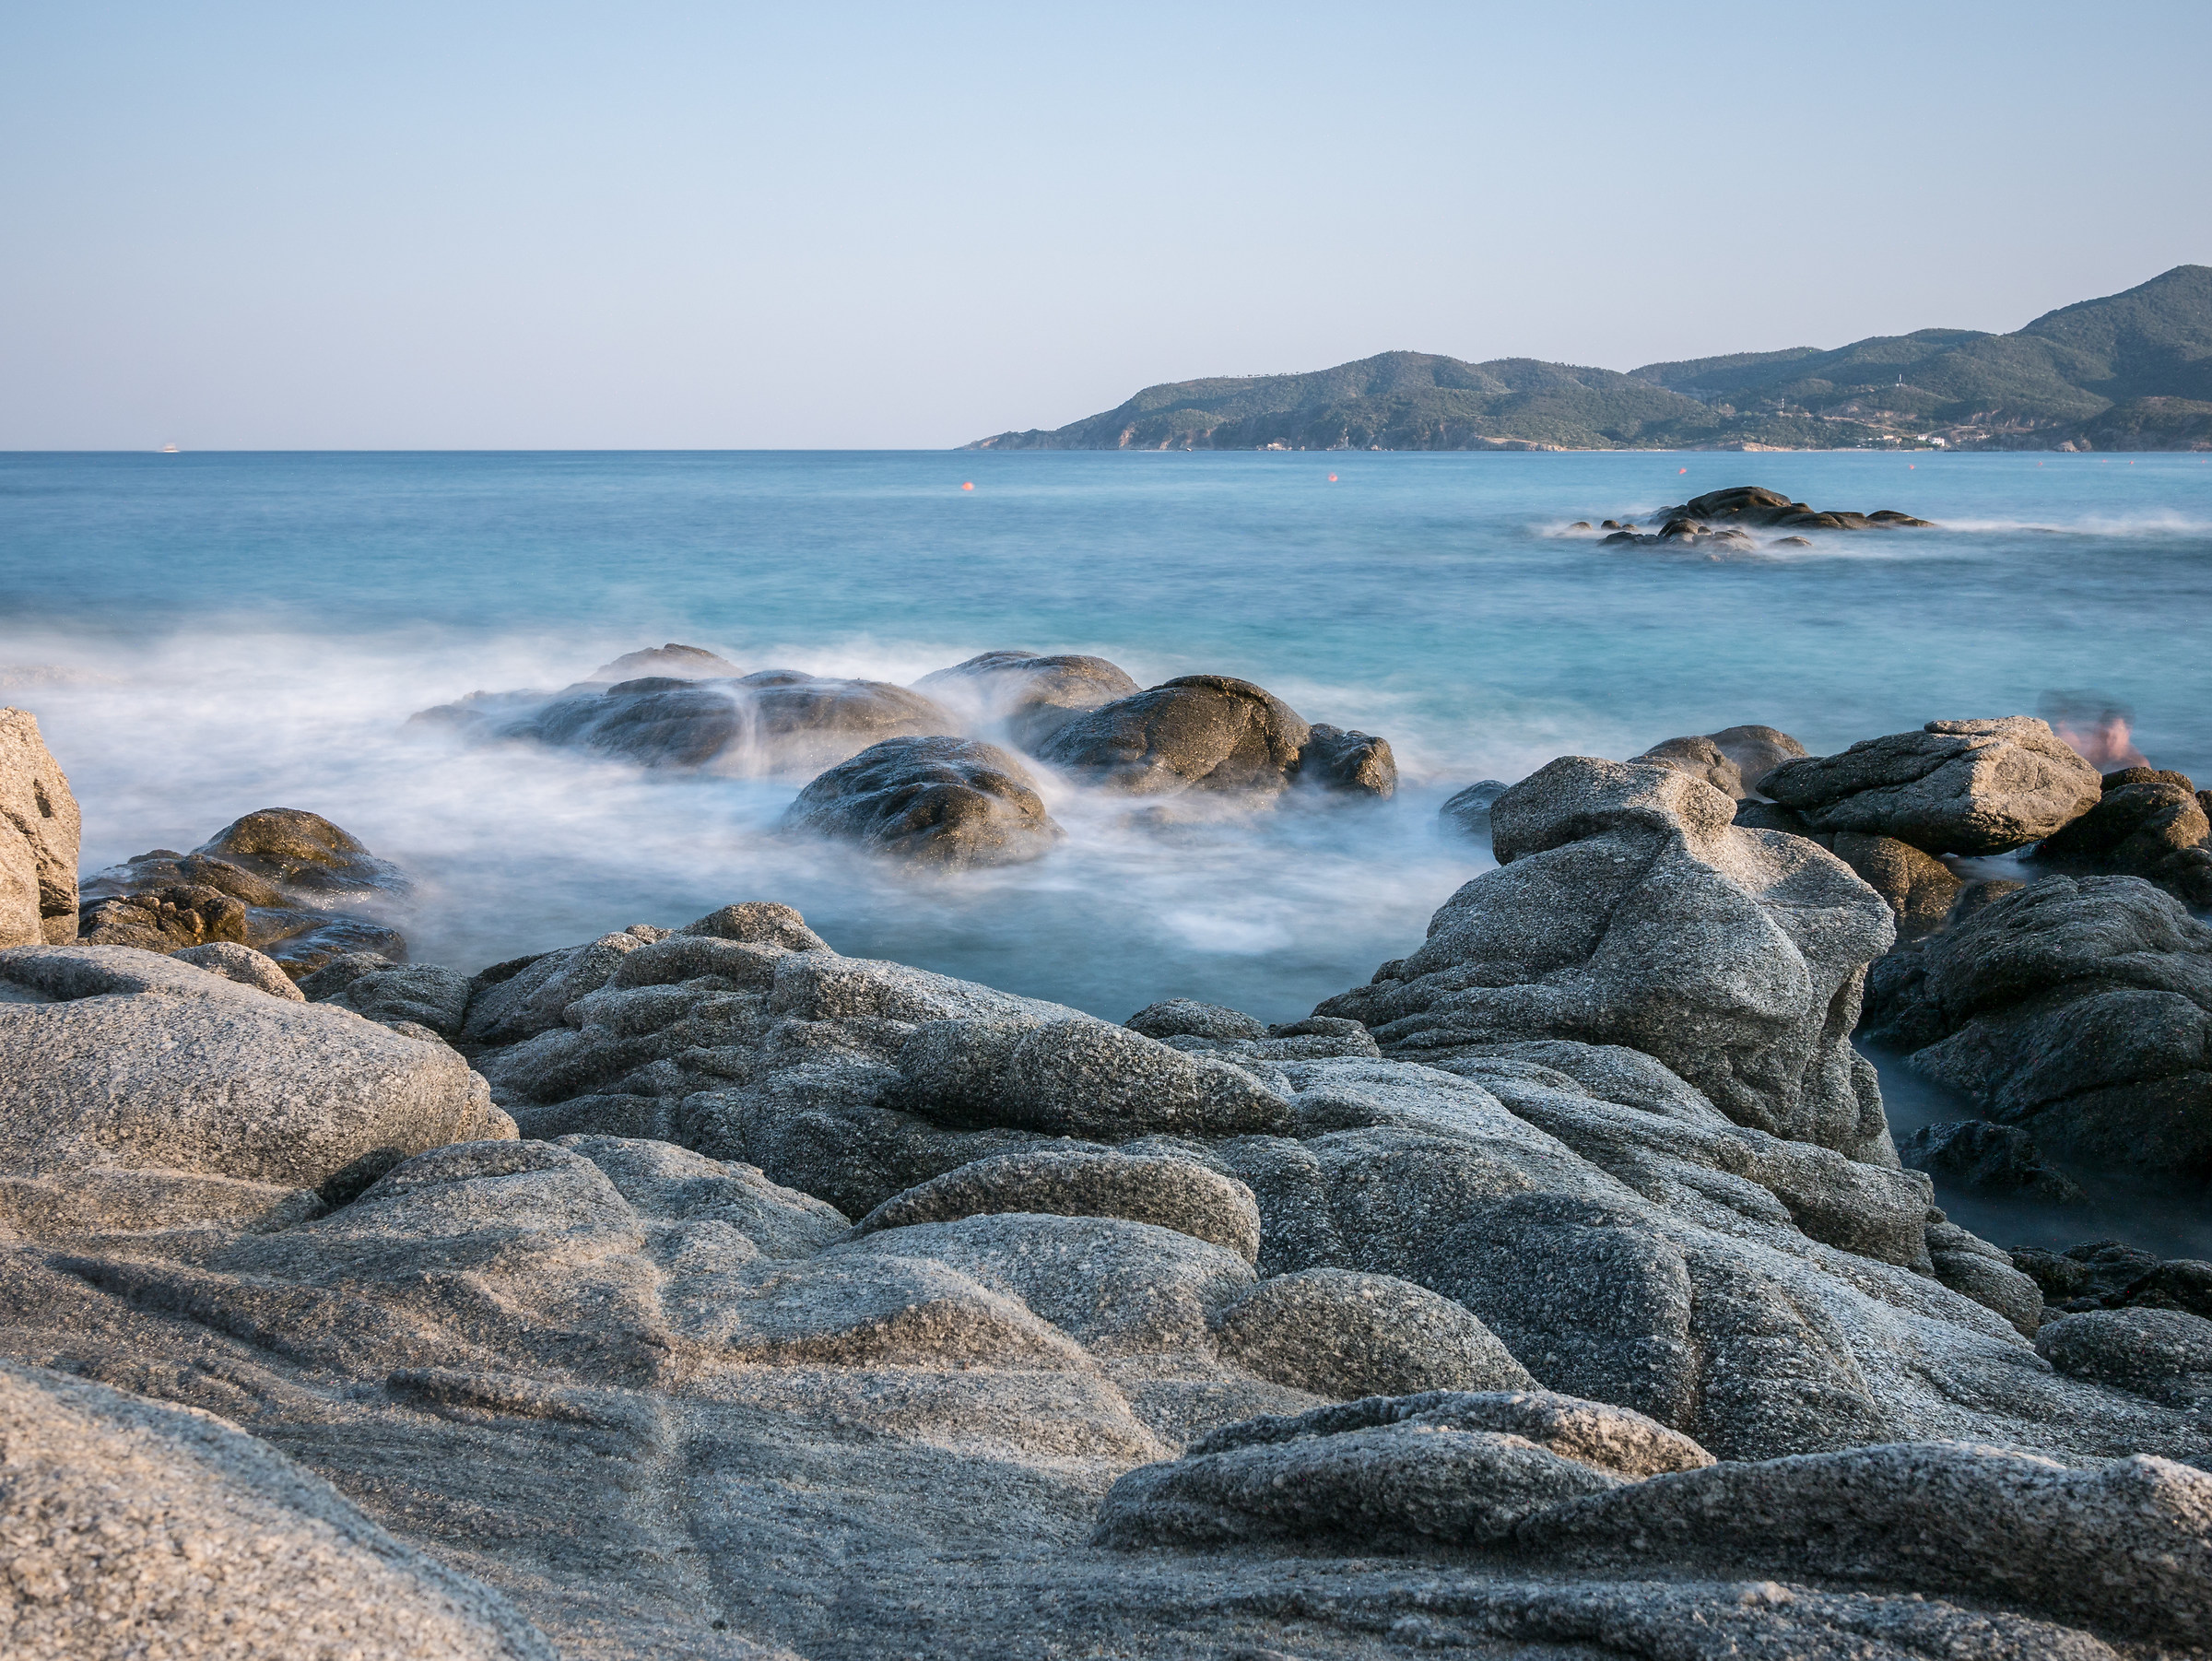 Tailors ' rocks-Chalkidiki peninsula...